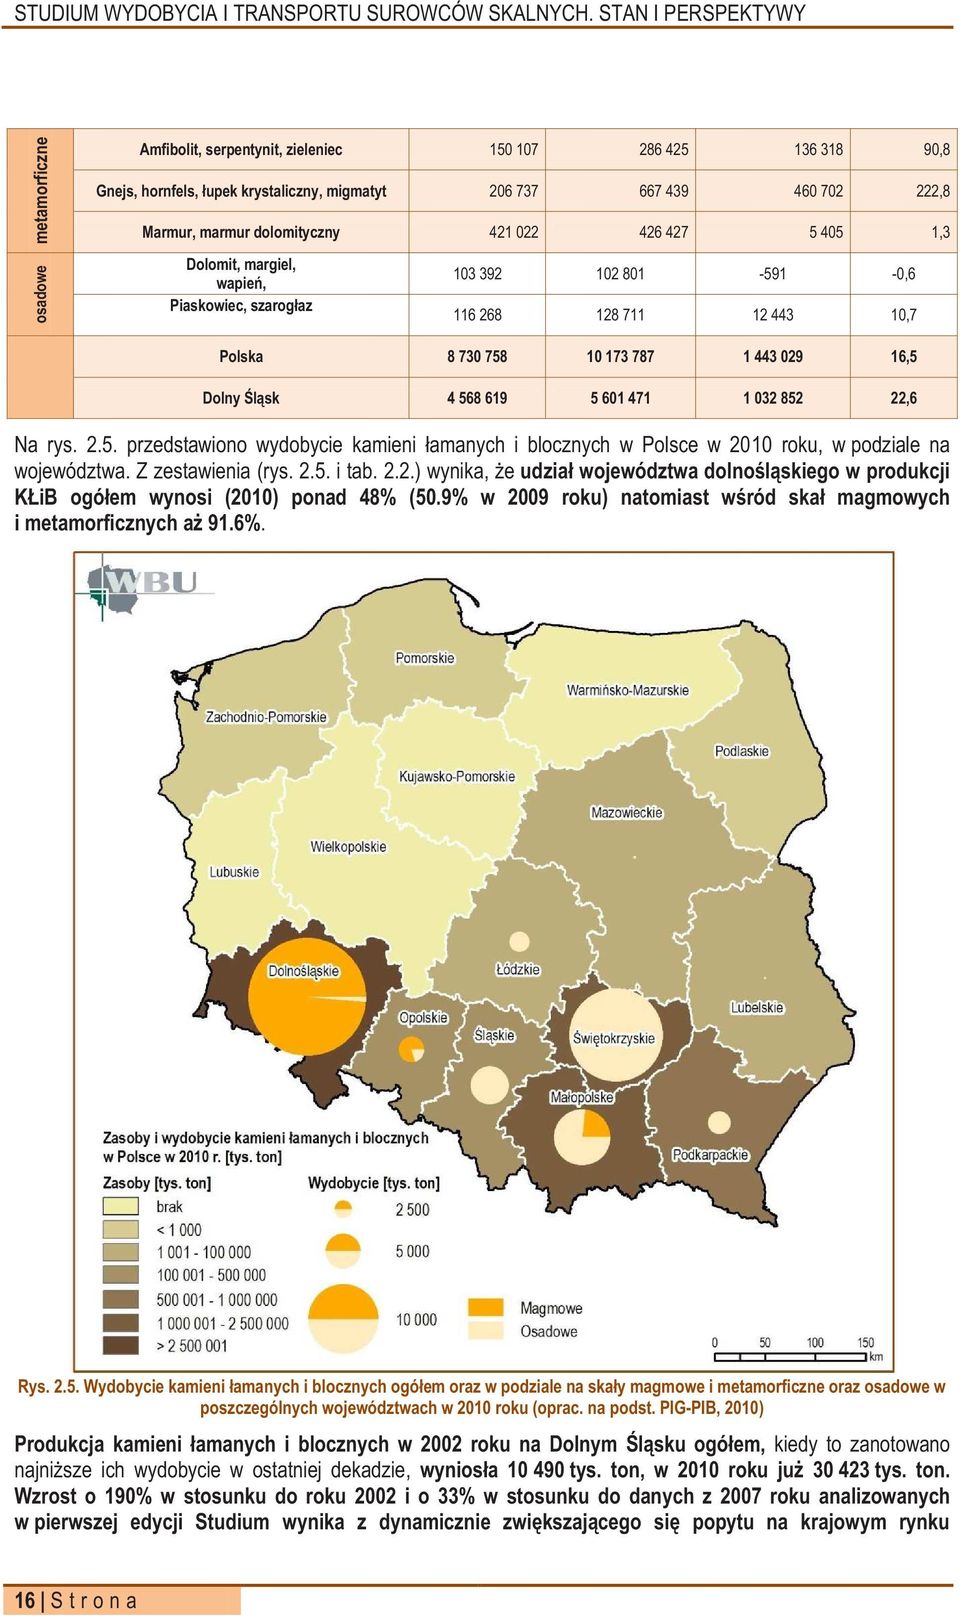 852 22,6 Na rys. 2.5. przedstawiono wydobycie kamieni łamanych i blocznych w Polsce w 2010 roku, w podziale na województwa. Z zestawienia (rys. 2.5. i tab. 2.2.) wynika, że udział województwa dolnośląskiego w produkcji KŁiB ogółem wynosi (2010) ponad 48% (50.